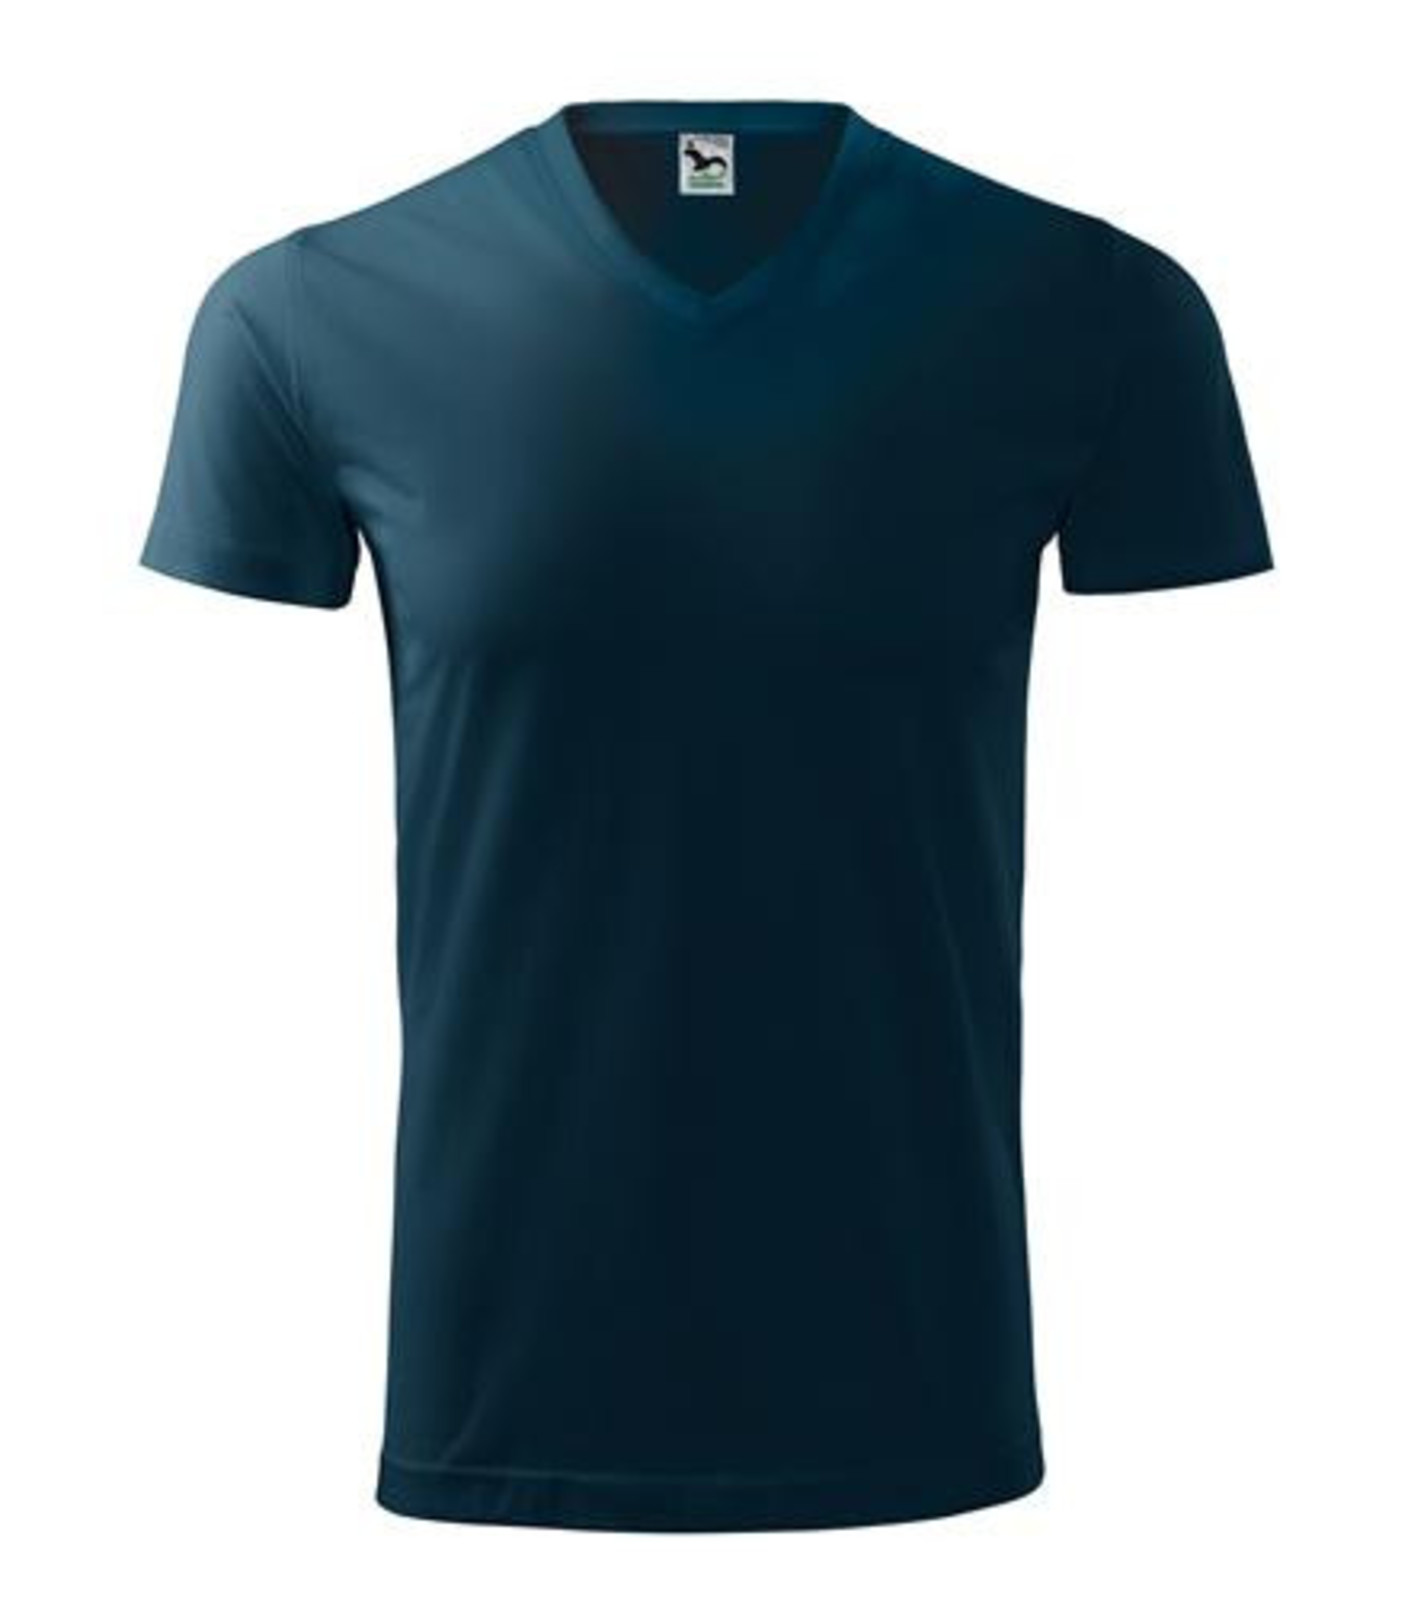 Unisex tričko s V výstrihom Adler Heavy V-Neck 111 - veľkosť: S, farba: tmavo modrá